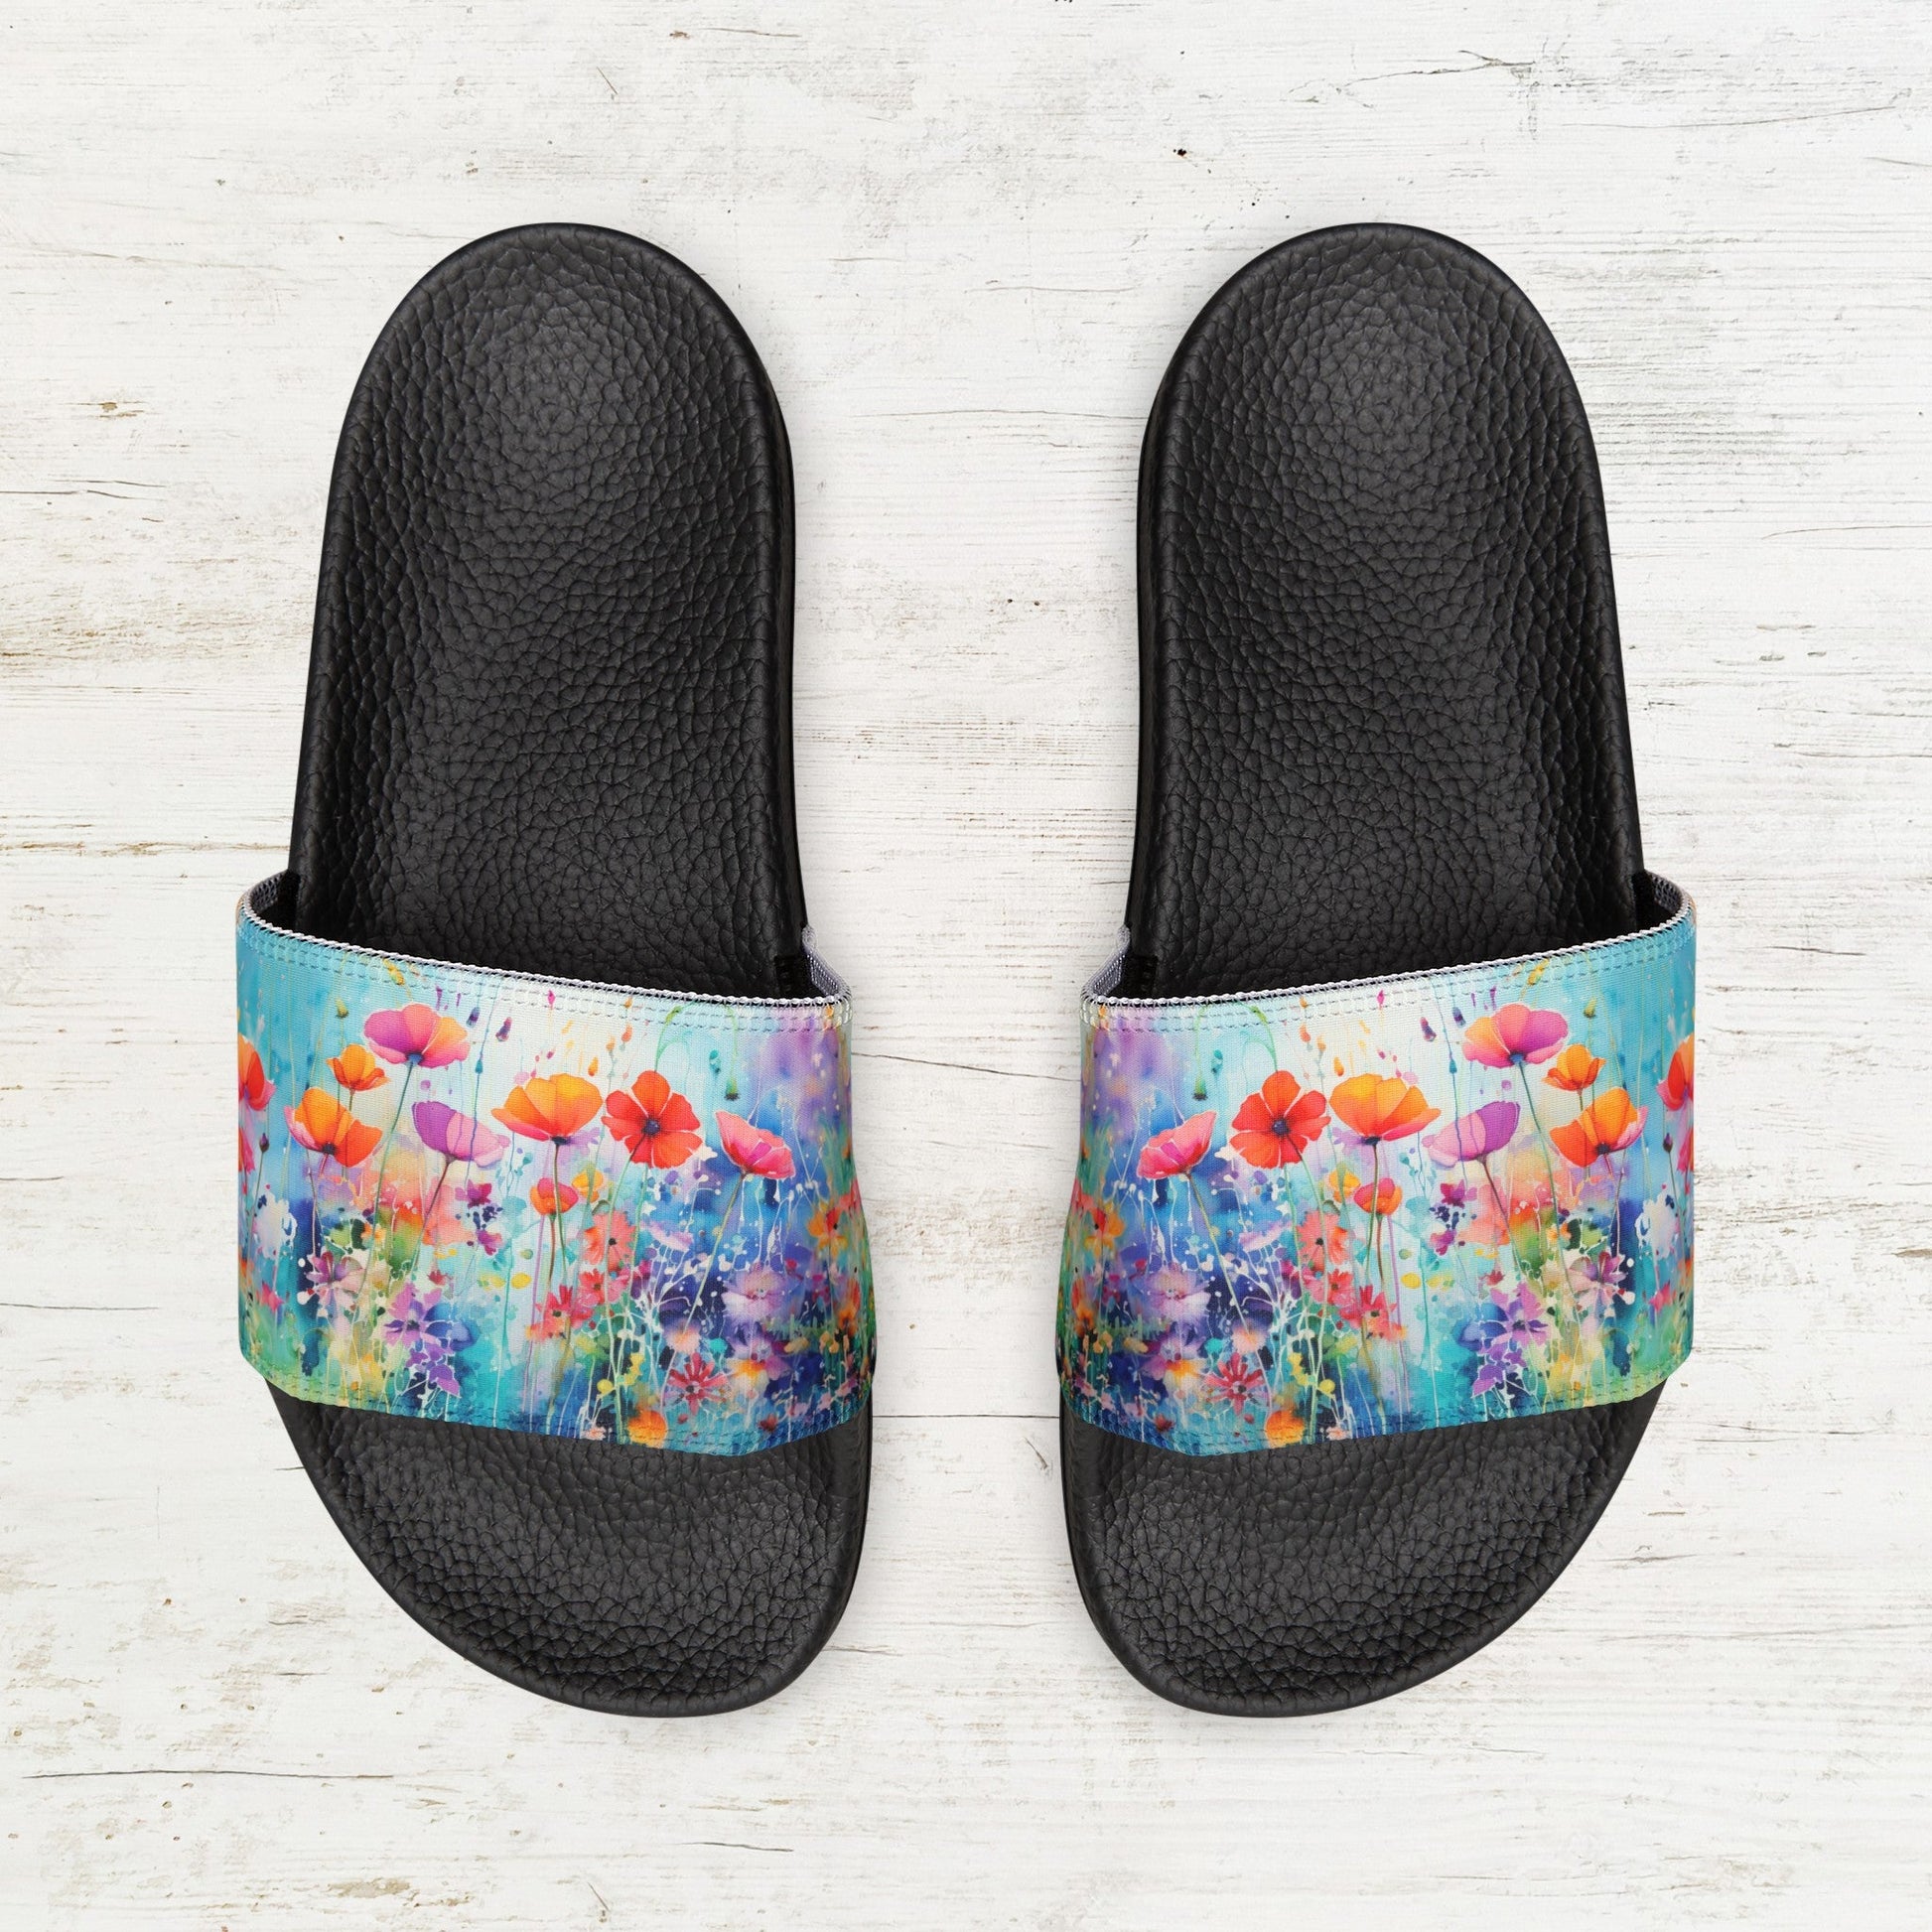 Wildflower Art Slide Sandals, Ladies and Girls Wildflower Art Shoes - FlooredByArt